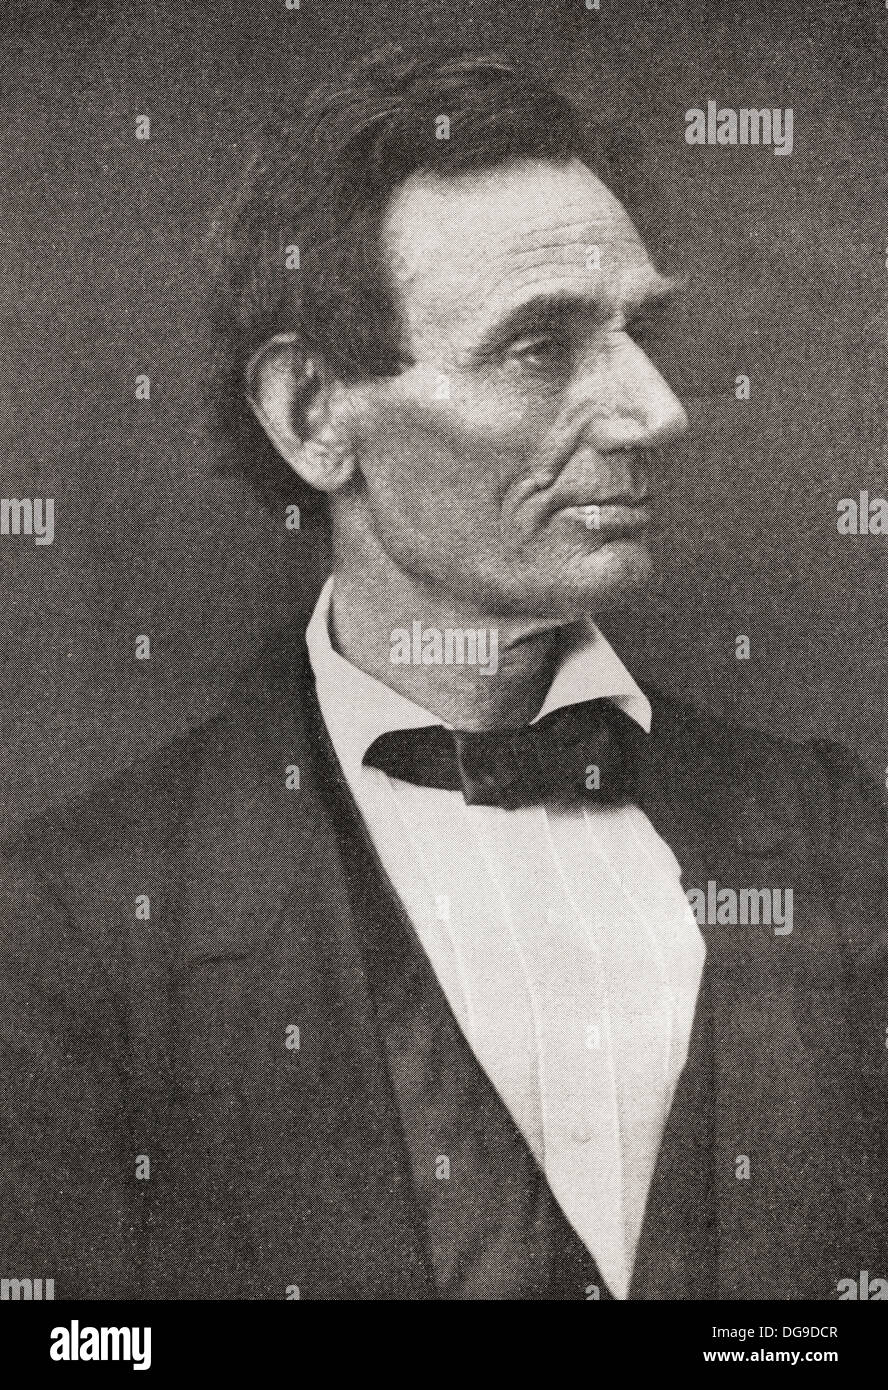 Abraham Lincoln, 1809 - 1865, vu ici en 1860. 16e président des États-Unis d'Amérique. Banque D'Images